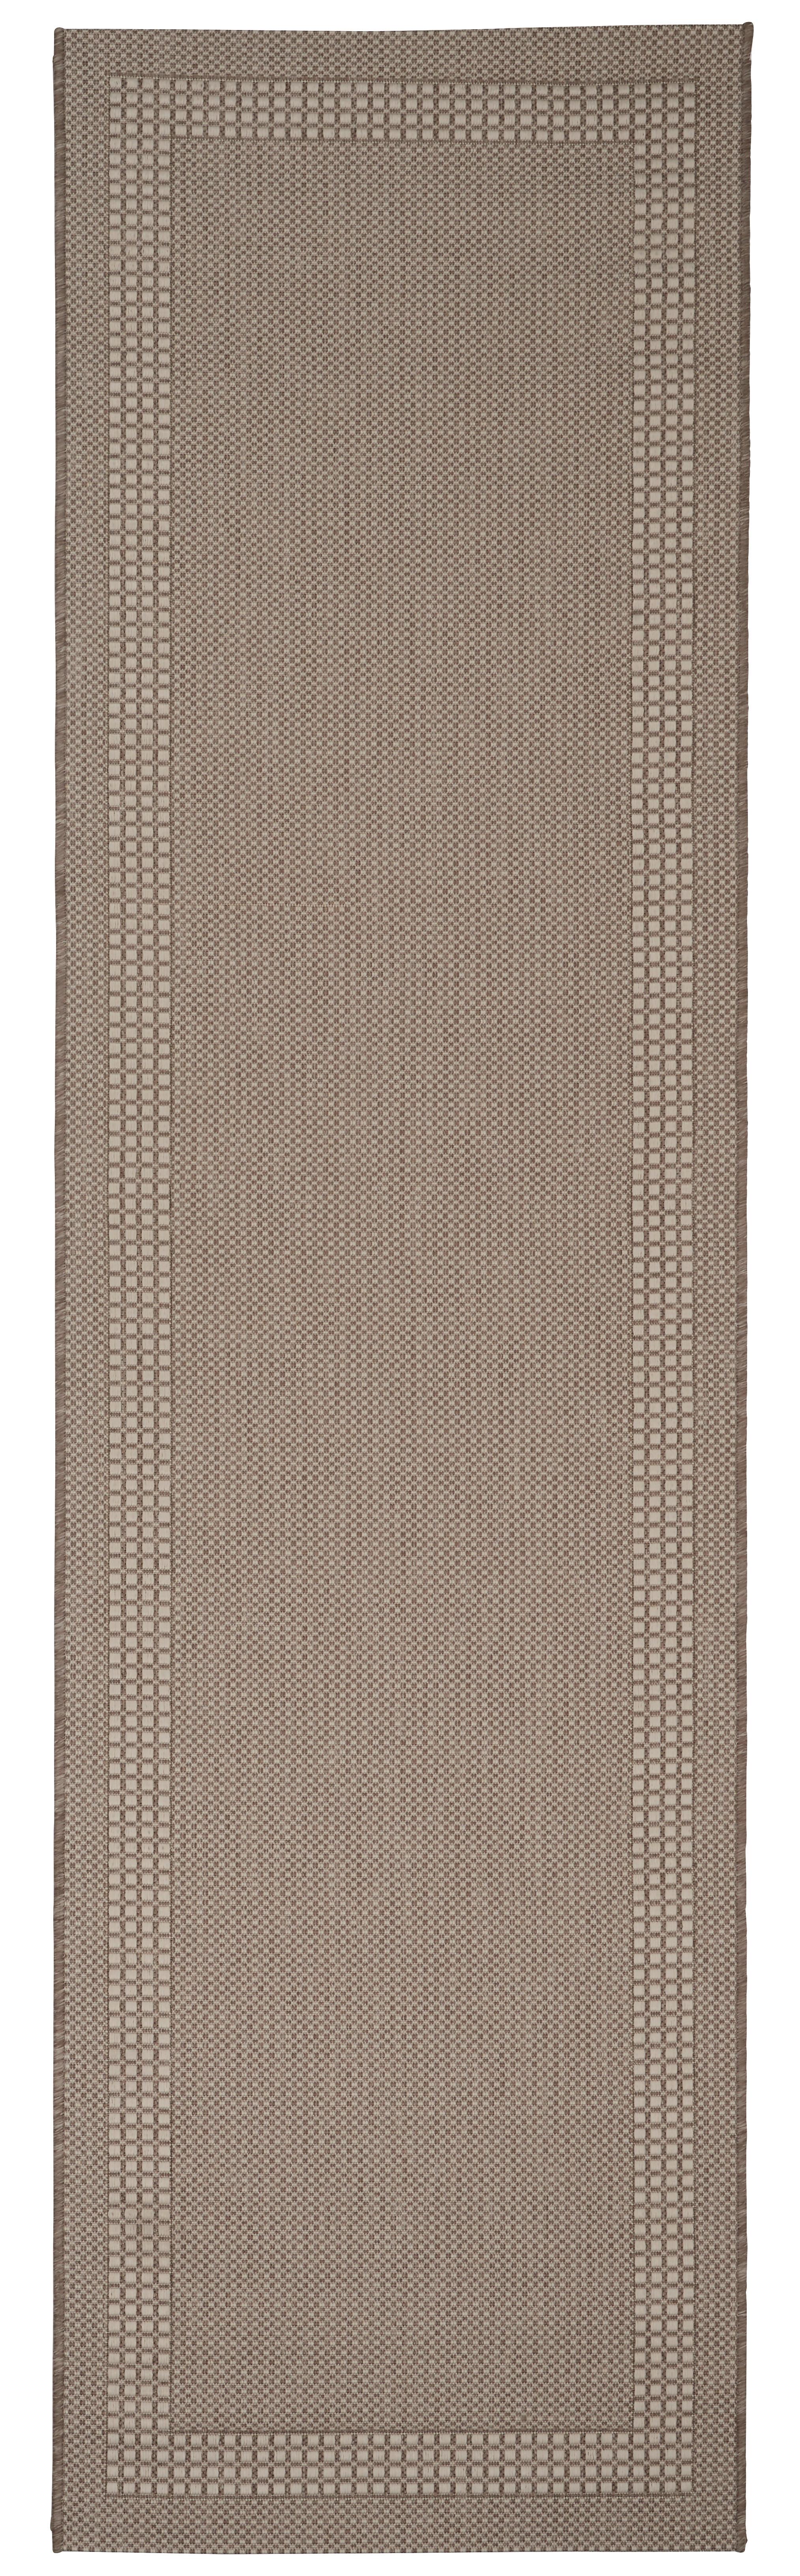 Síkszövött Szőnyeg Naomi 80/290 - Bézs, konvencionális, Textil (80/290cm) - Modern Living